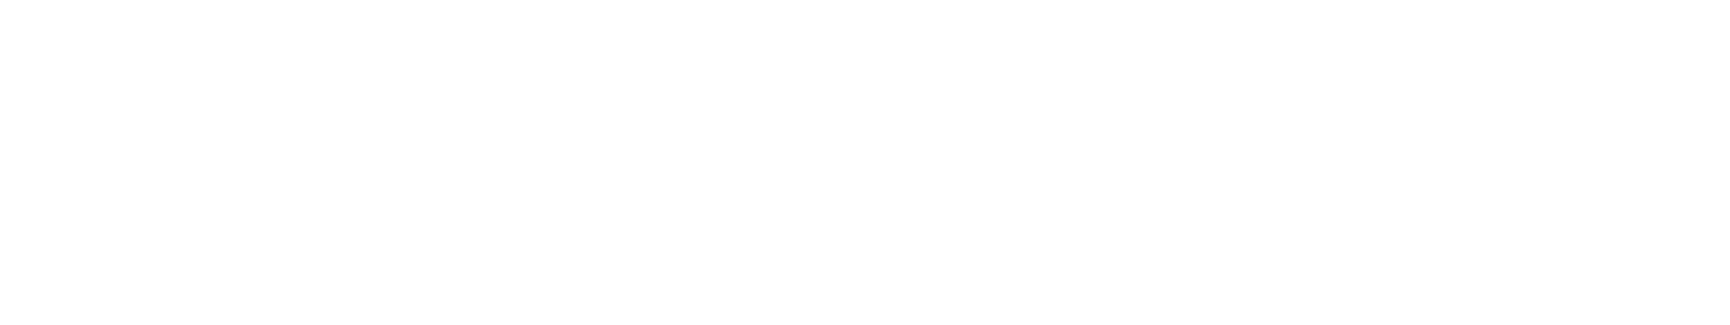 SMU Libraries logo